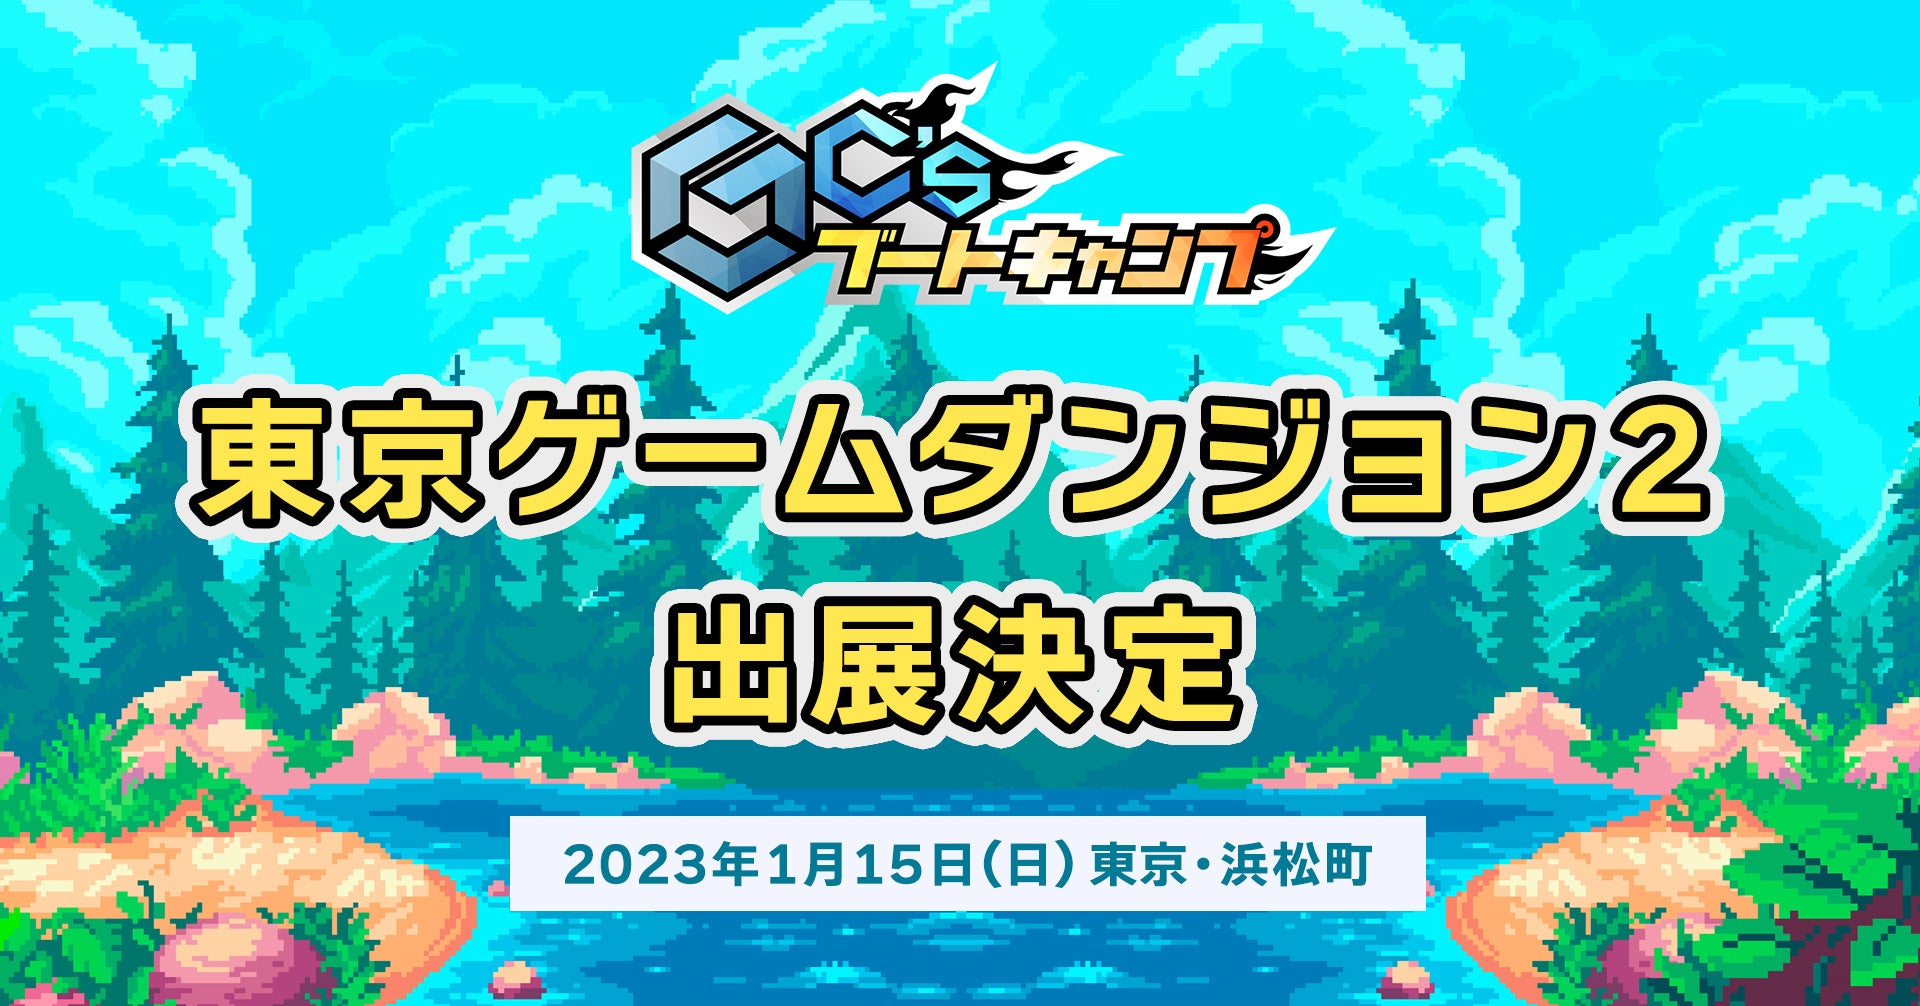 東京ゲームダンジョン2出展決定！GC’sブートキャンプ新年初イベント開催。